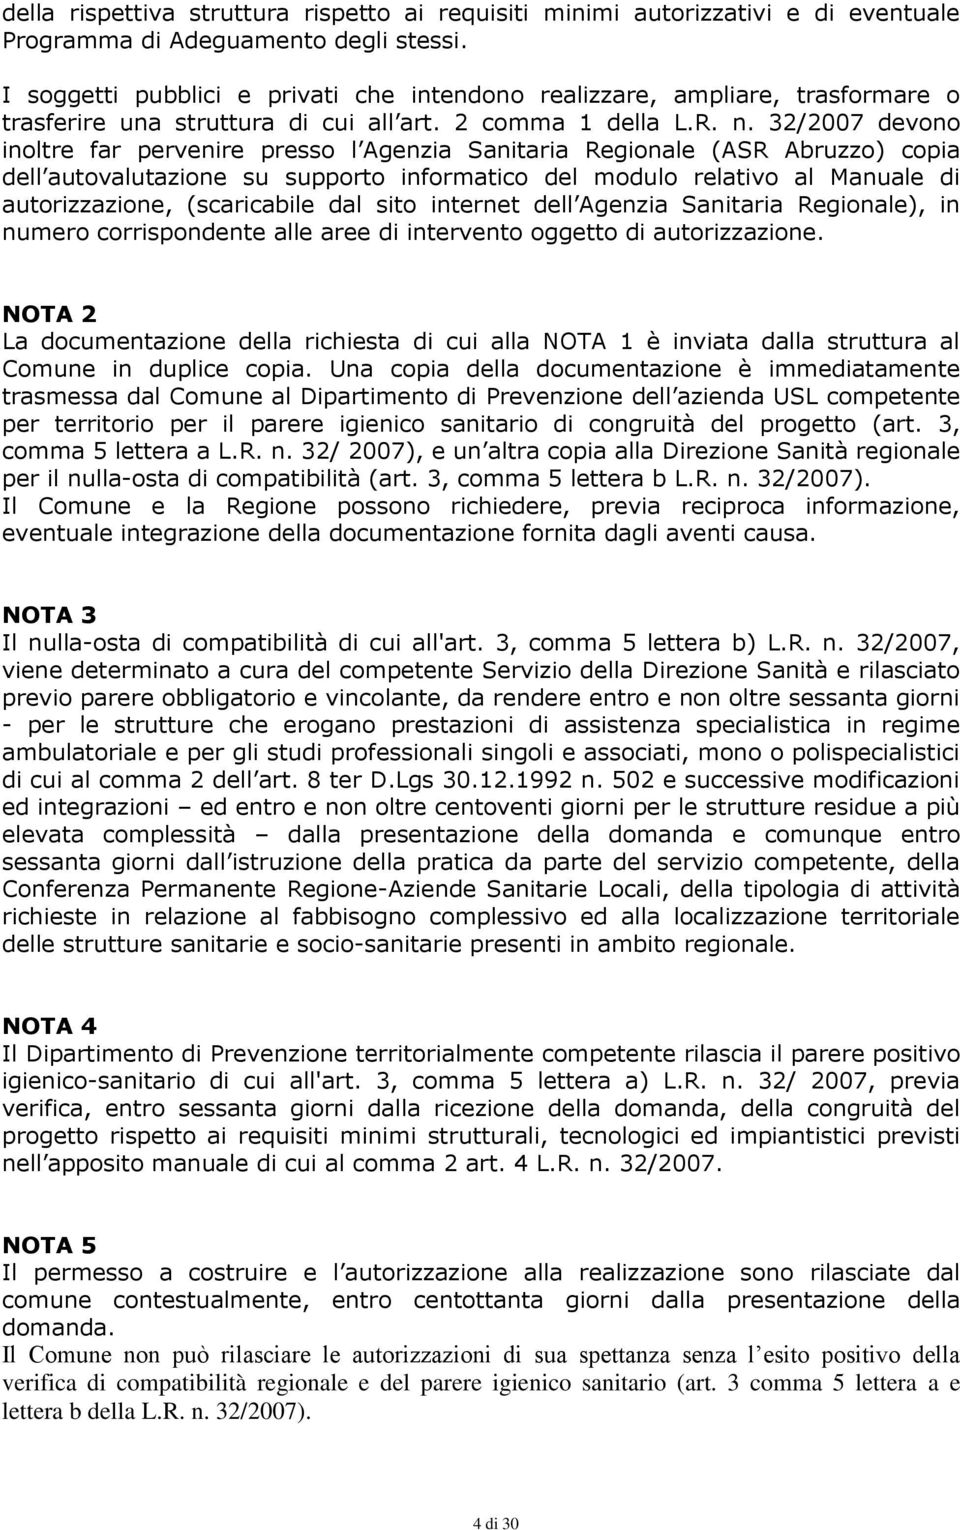 32/2007 devono inoltre far pervenire presso l Agenzia Sanitaria Regionale (ASR Abruzzo) copia dell autovalutazione su supporto informatico del modulo relativo al Manuale di autorizzazione,